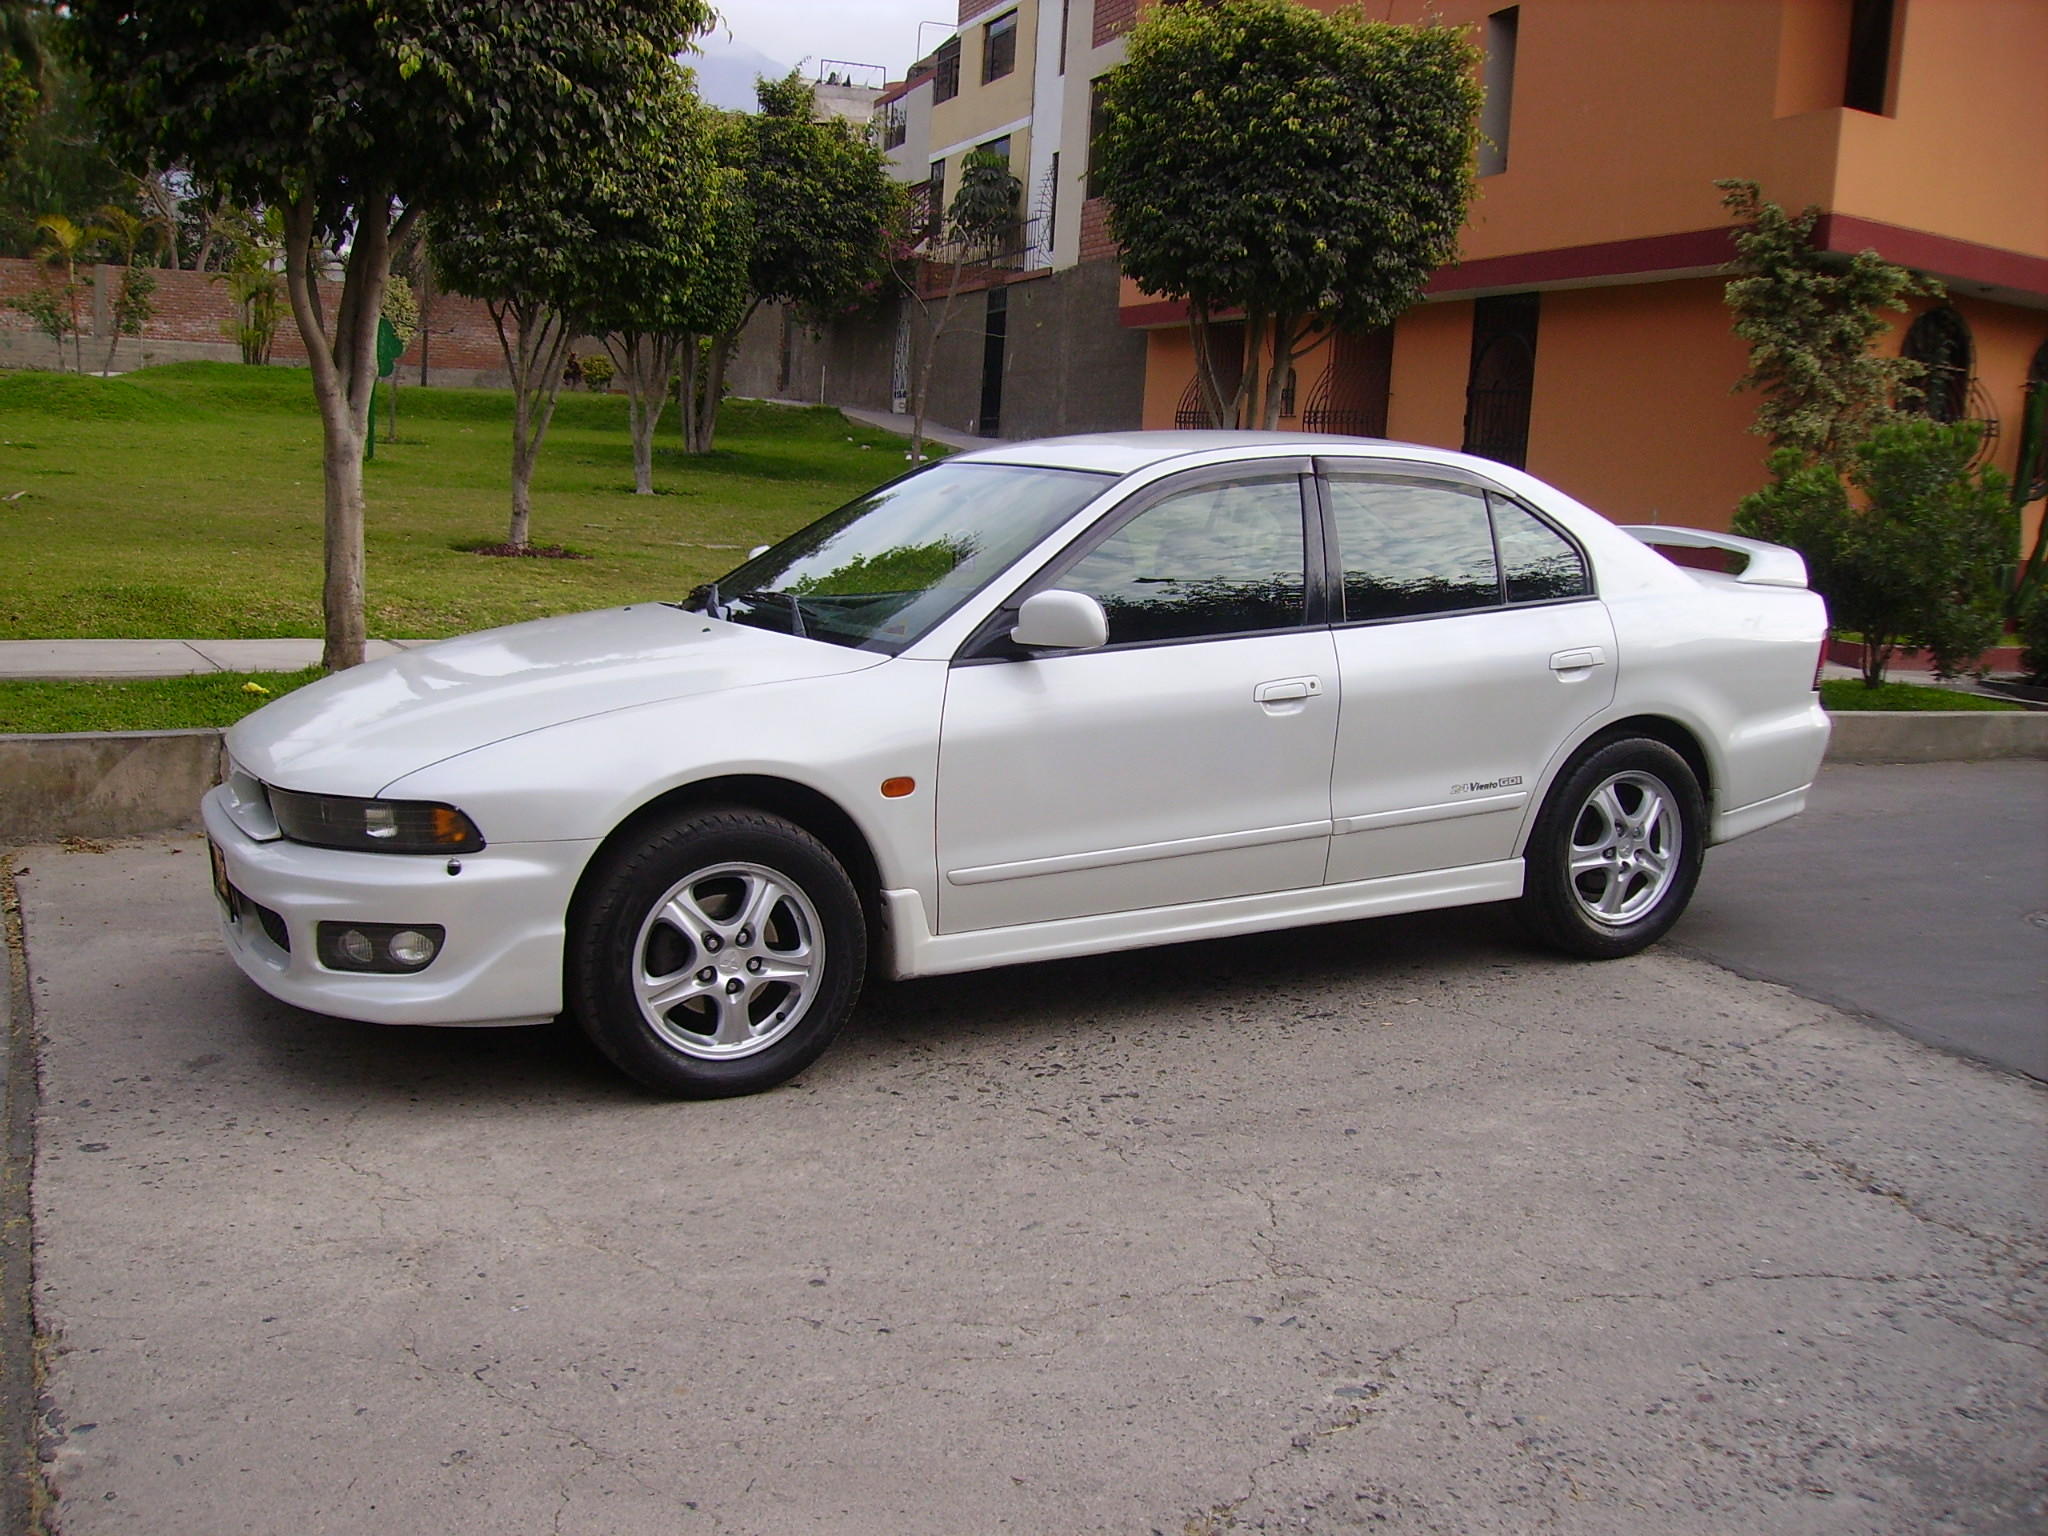 Мицубиси 1999г. Митсубиси Галант 1999. Mitsubishi Galant 1999. Митсубиси Галант 1999 года. Mitsubishi Galant 99.